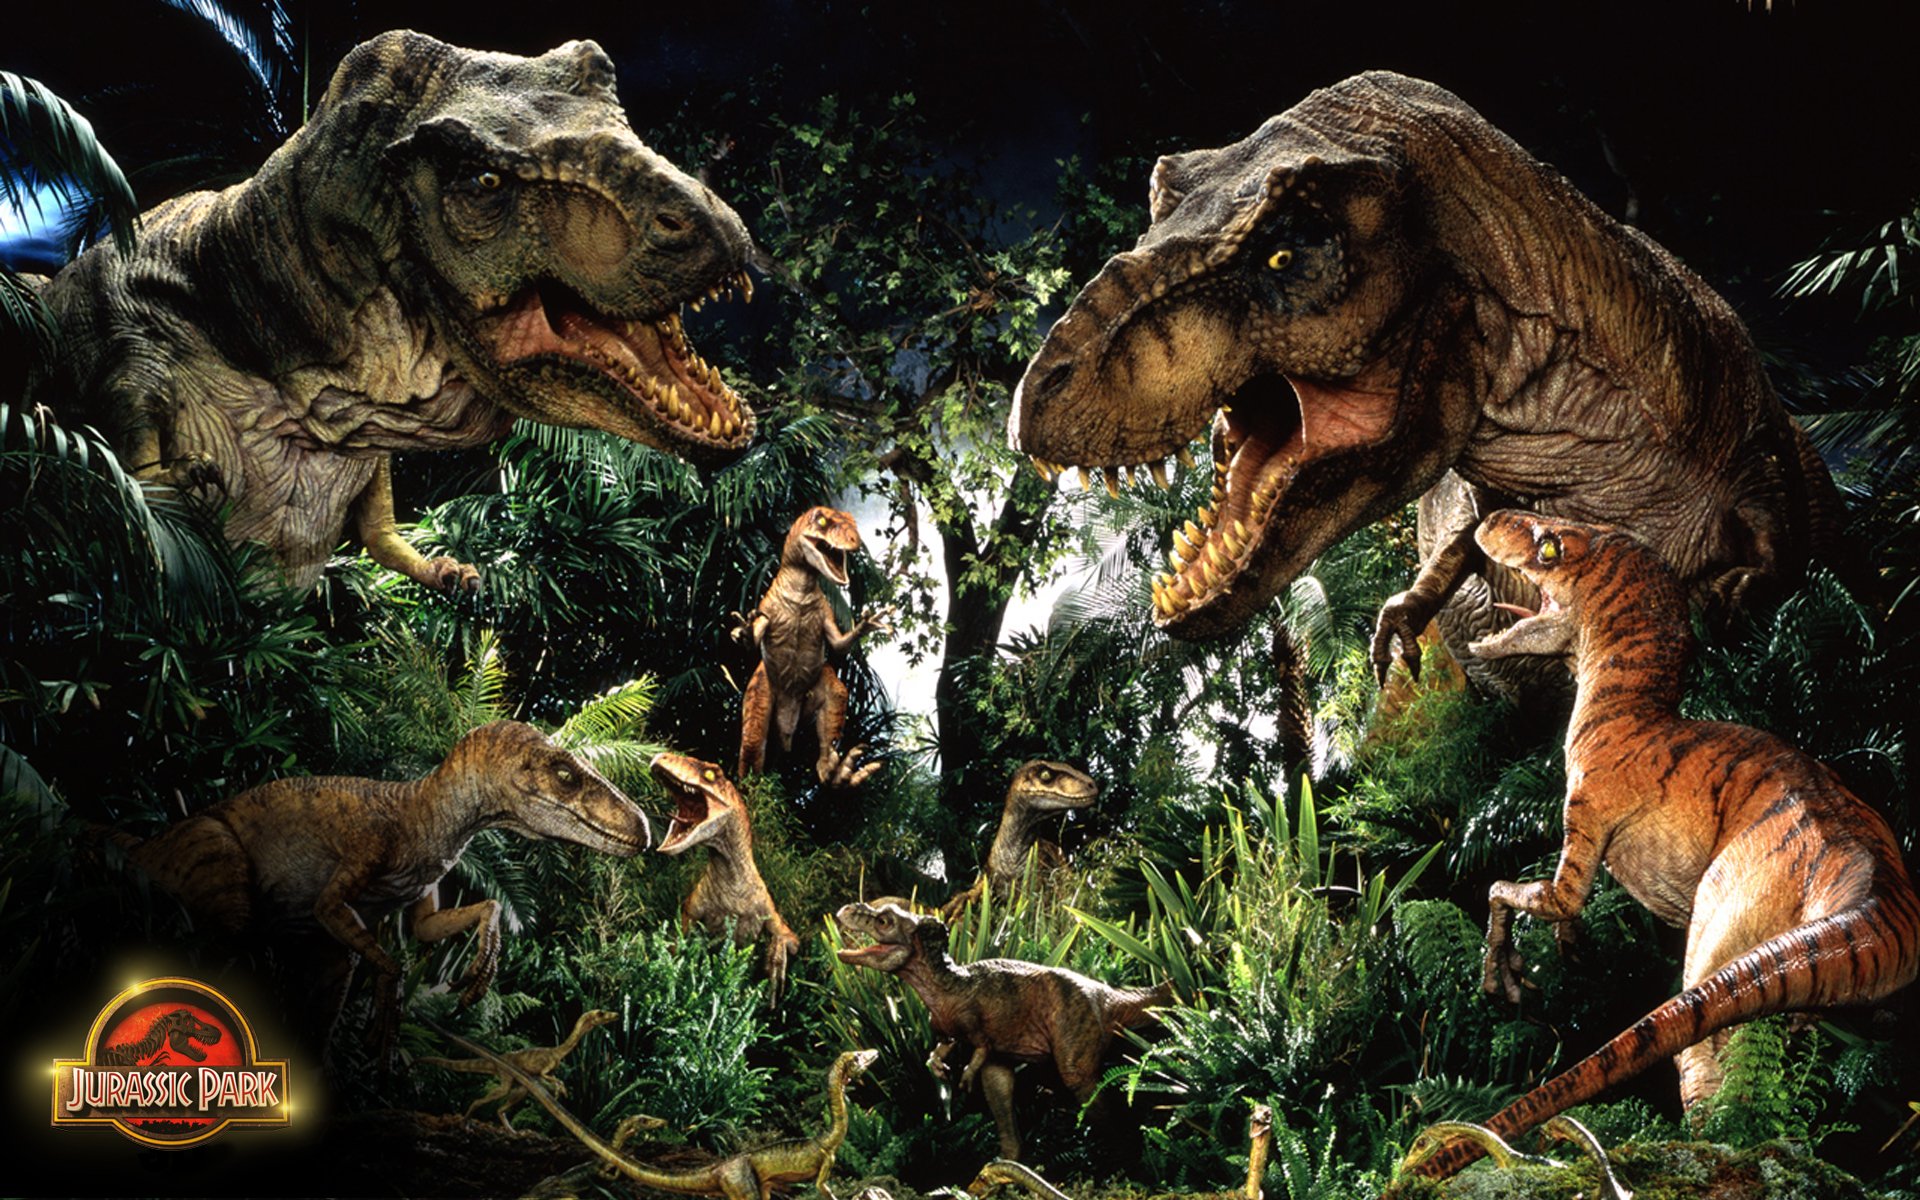 Jurassic Park Wallpaper Dinosaurs - Lost World Jurassic Park 2 T Rex , HD Wallpaper & Backgrounds